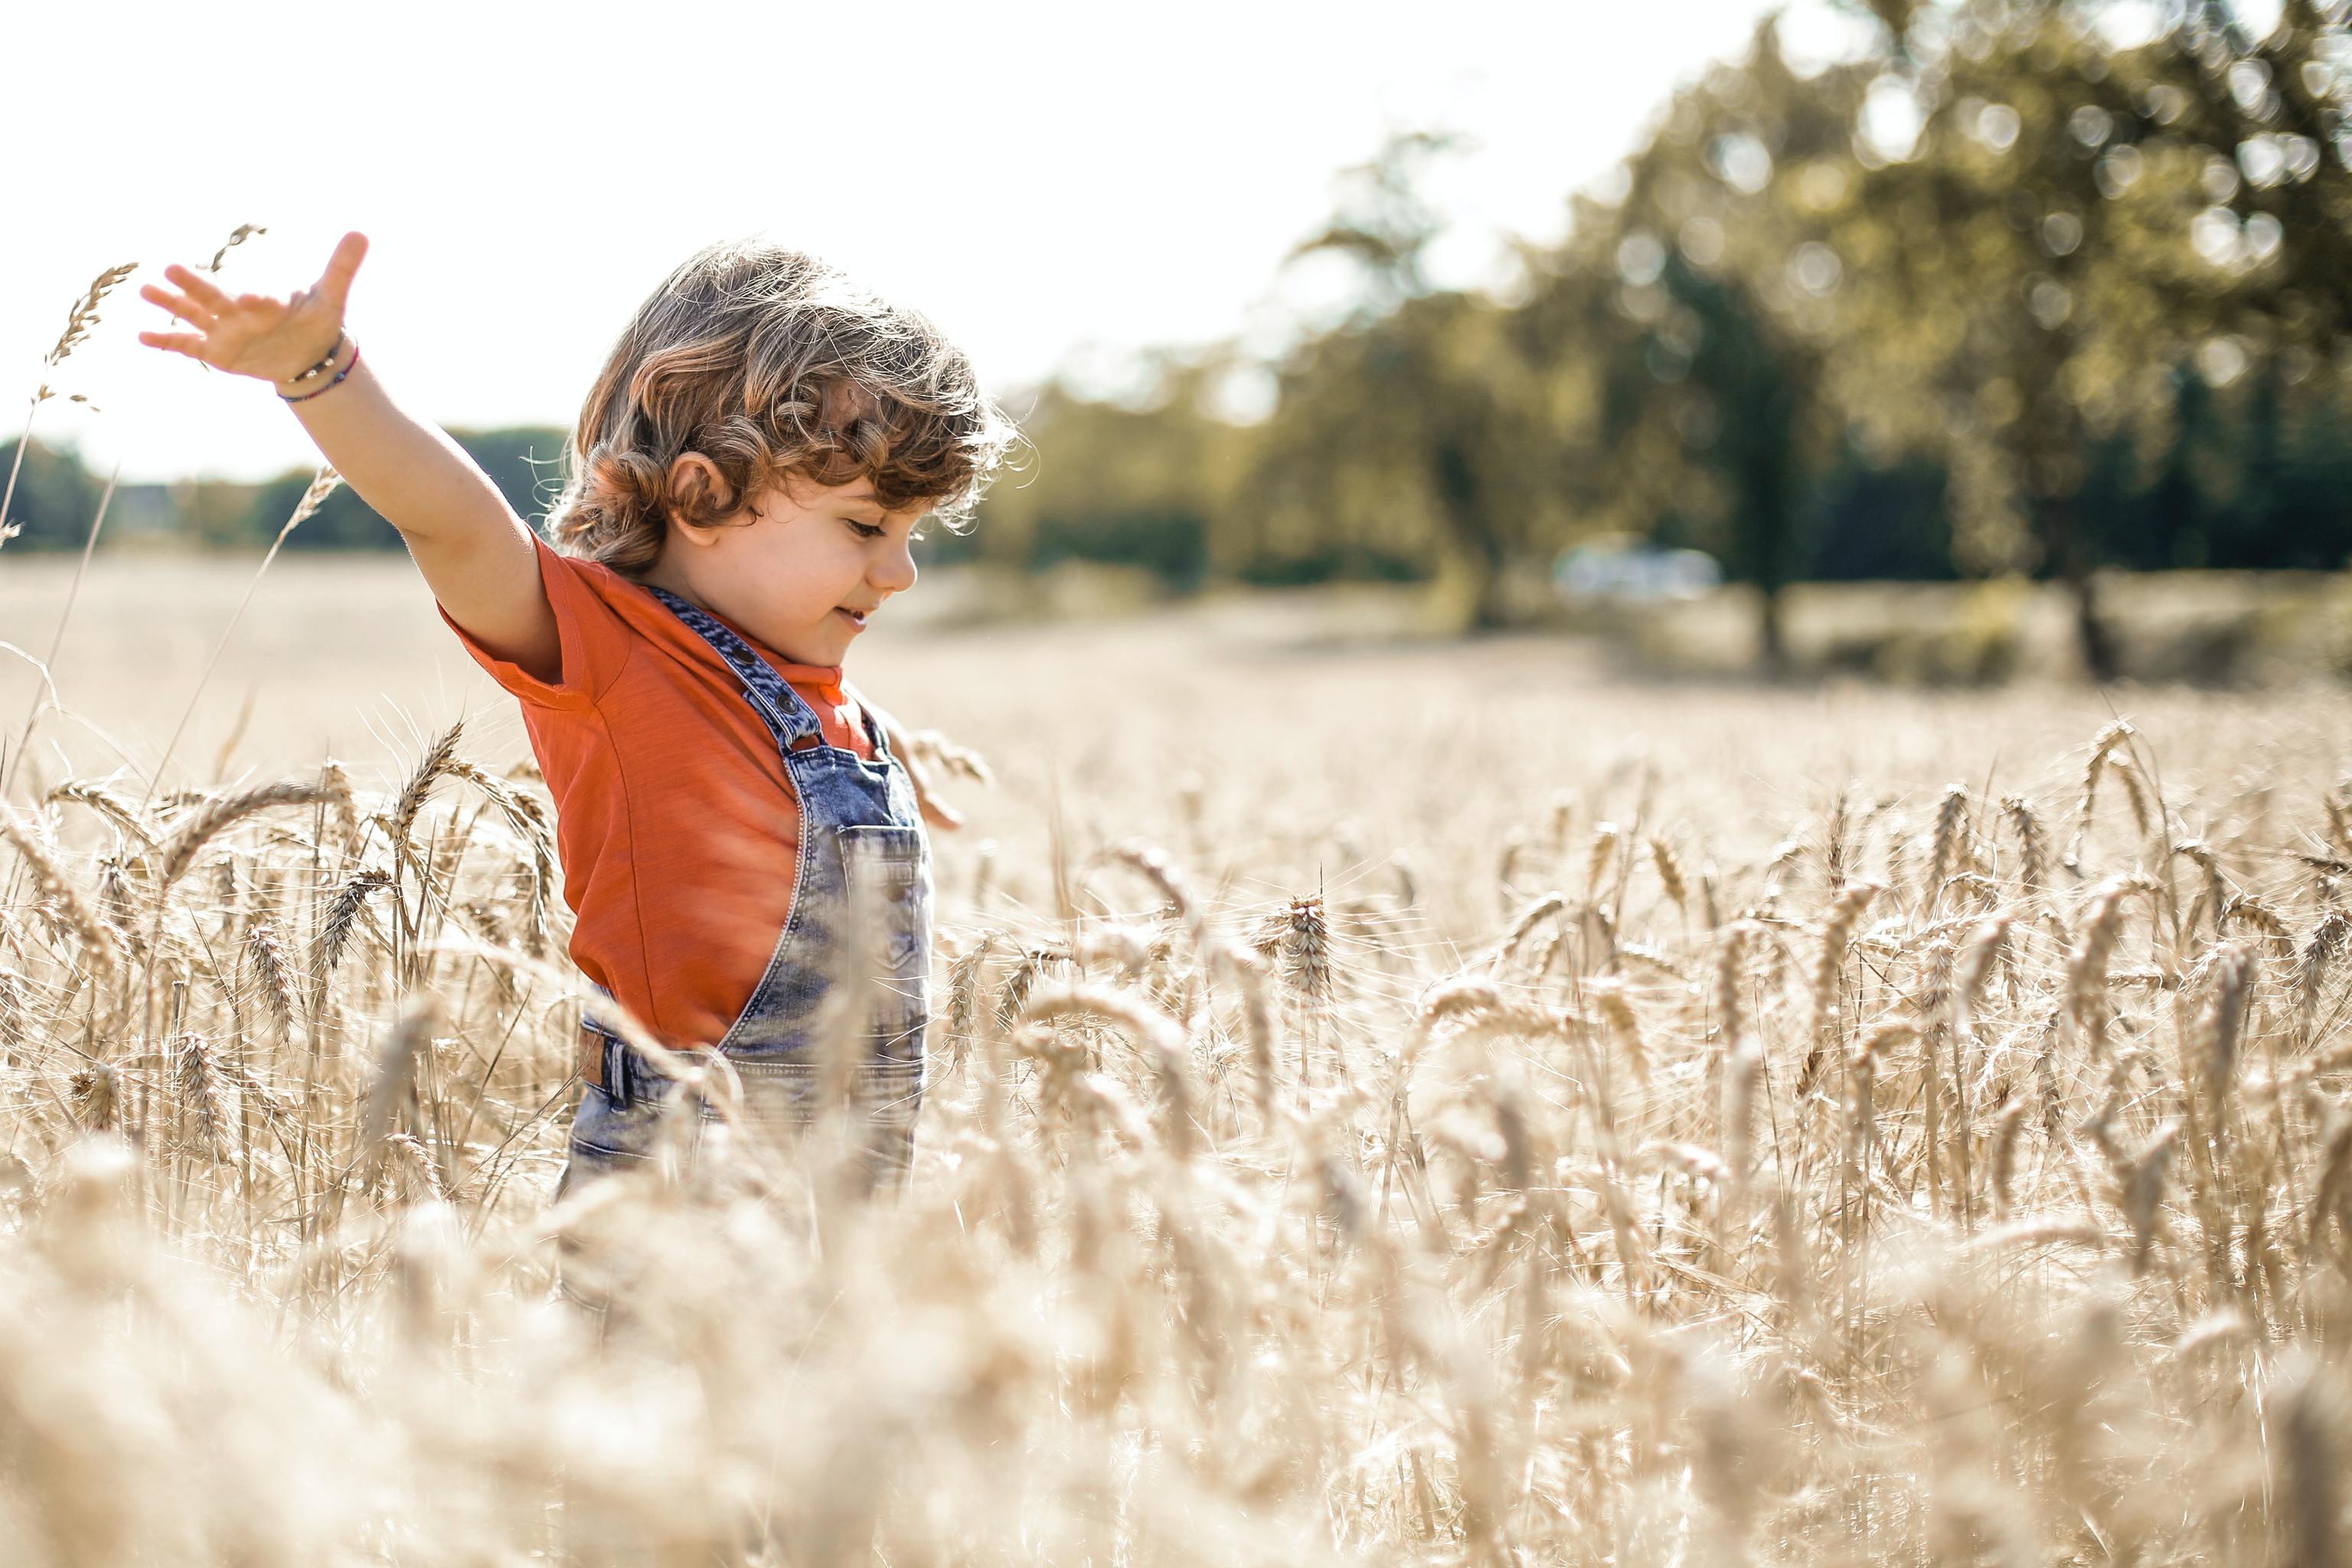 Un nio juega en torno a un campo de trigo, en un entorno campestre.